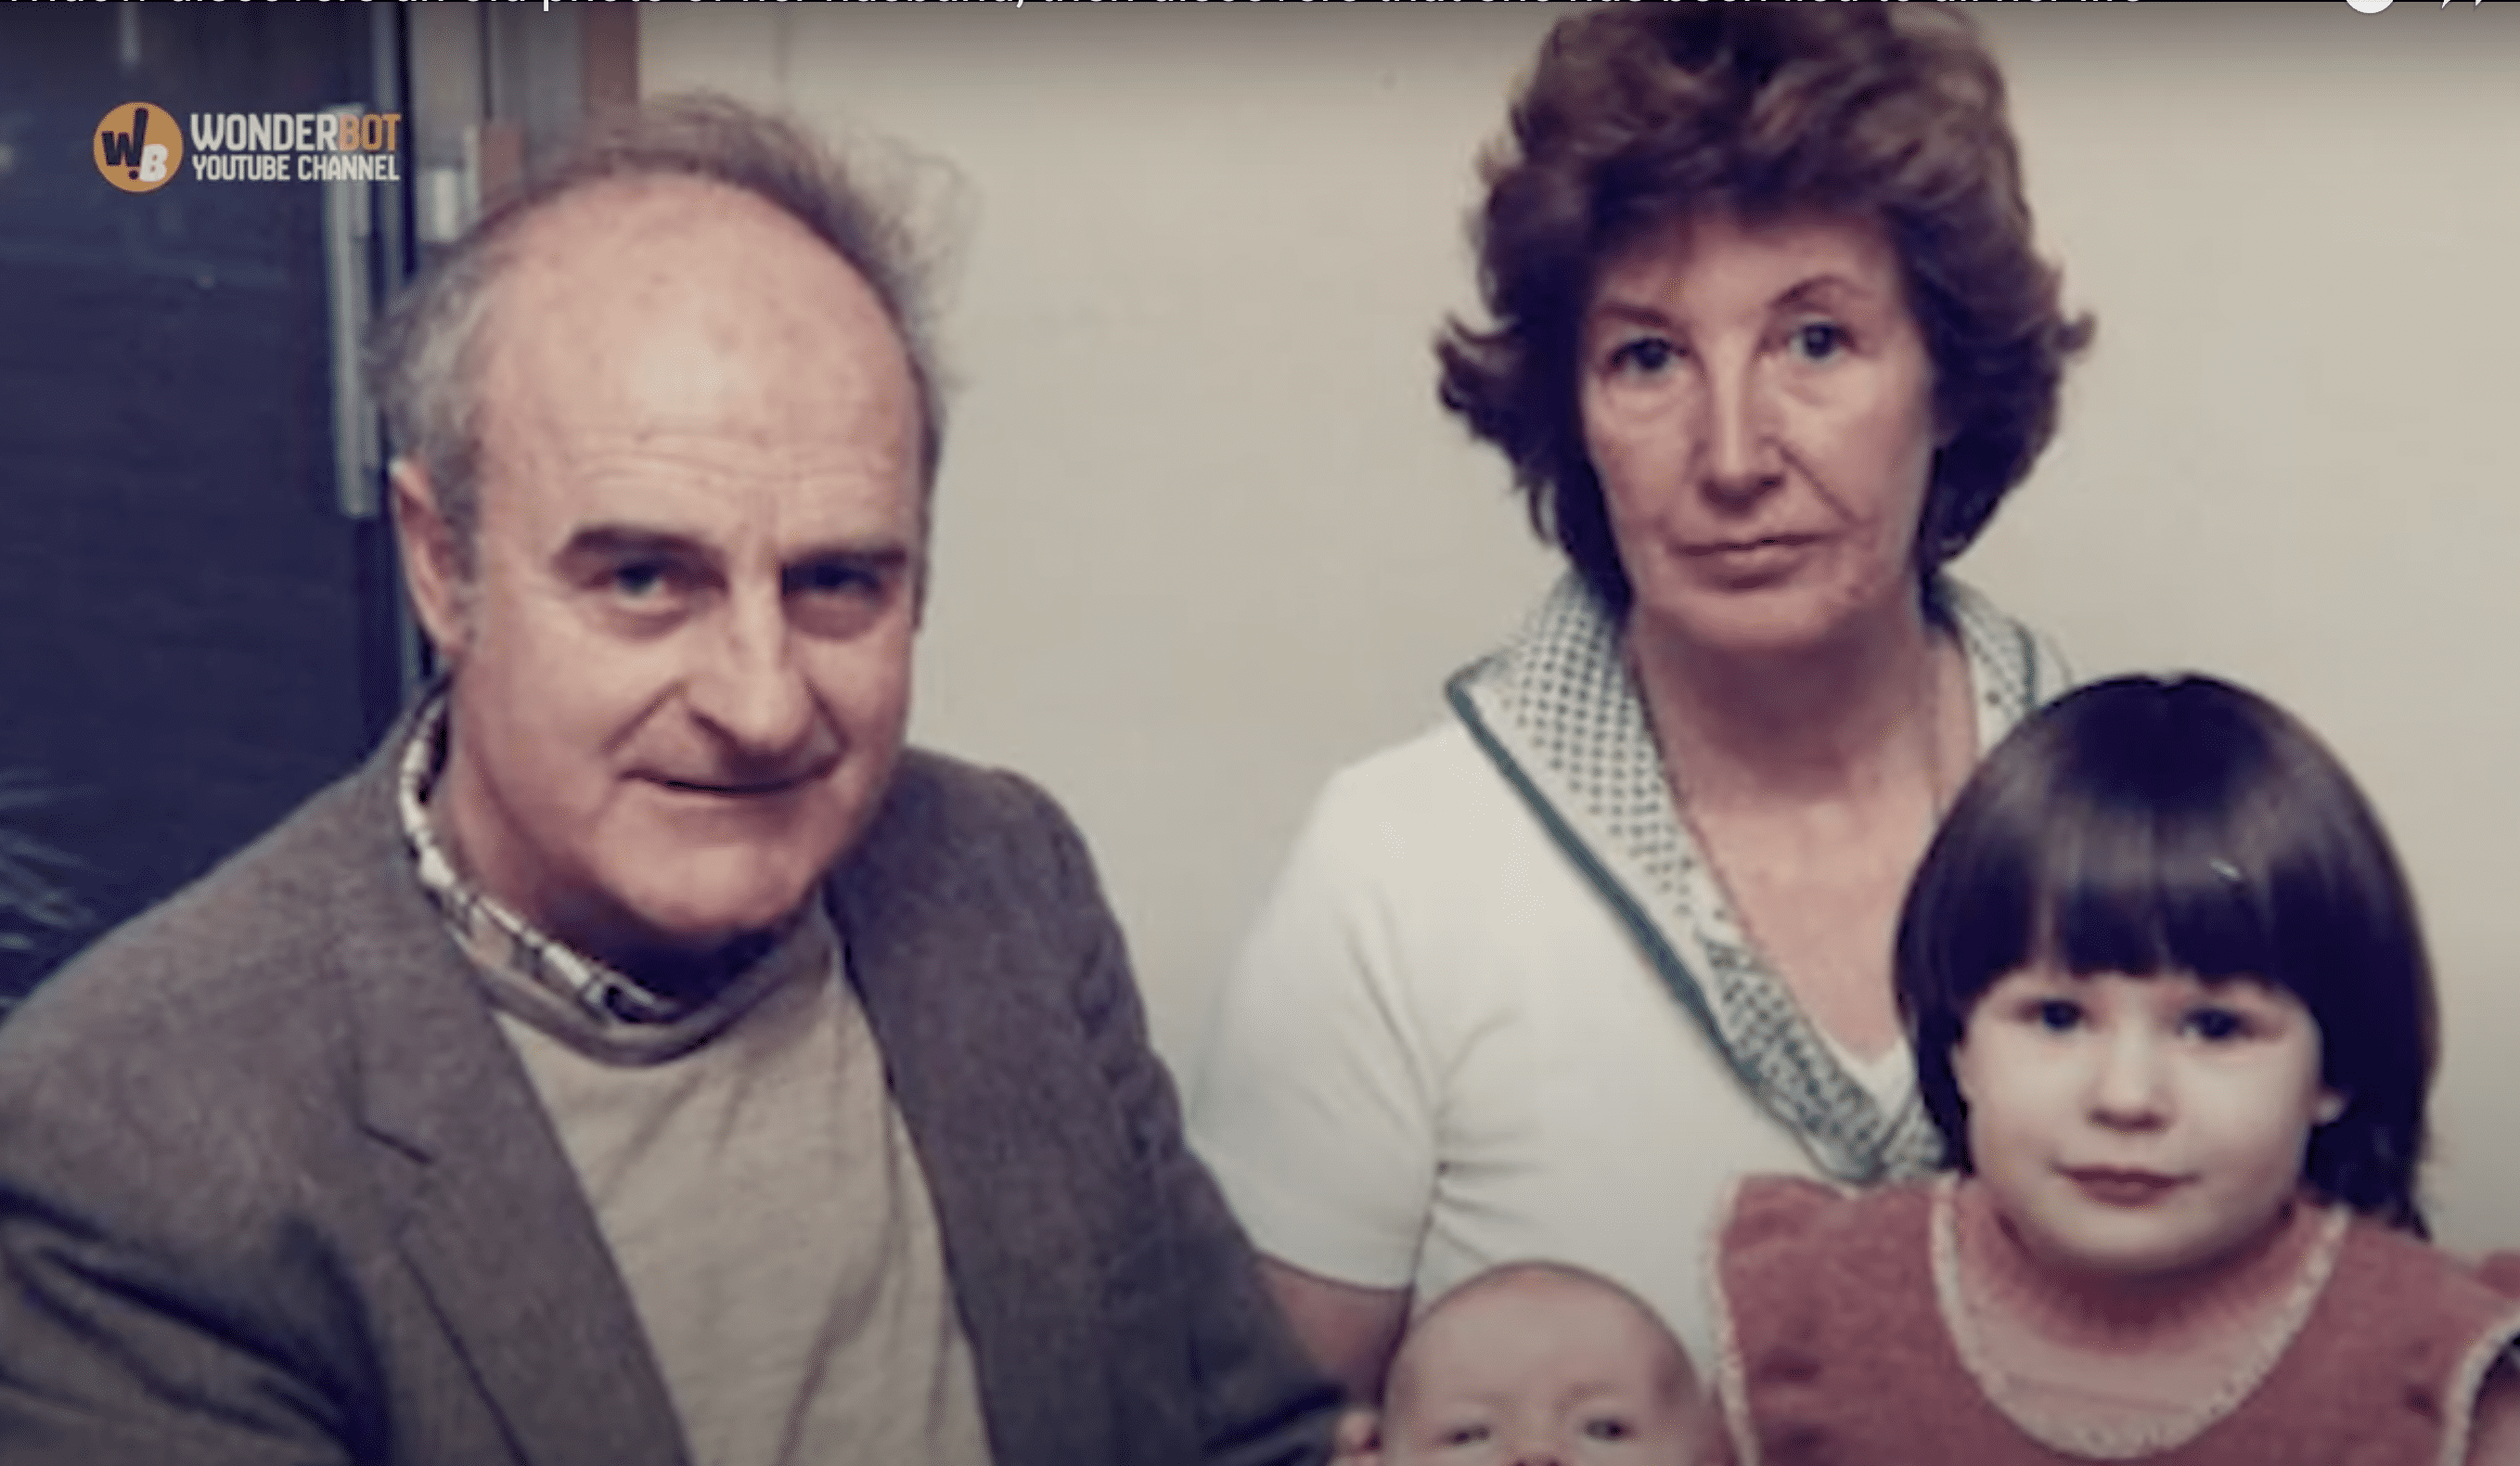 Audrey und Glyndwr Phillips mit ihren beiden Kindern abgebildet. | Quelle: Youtube.com/Wonderbot